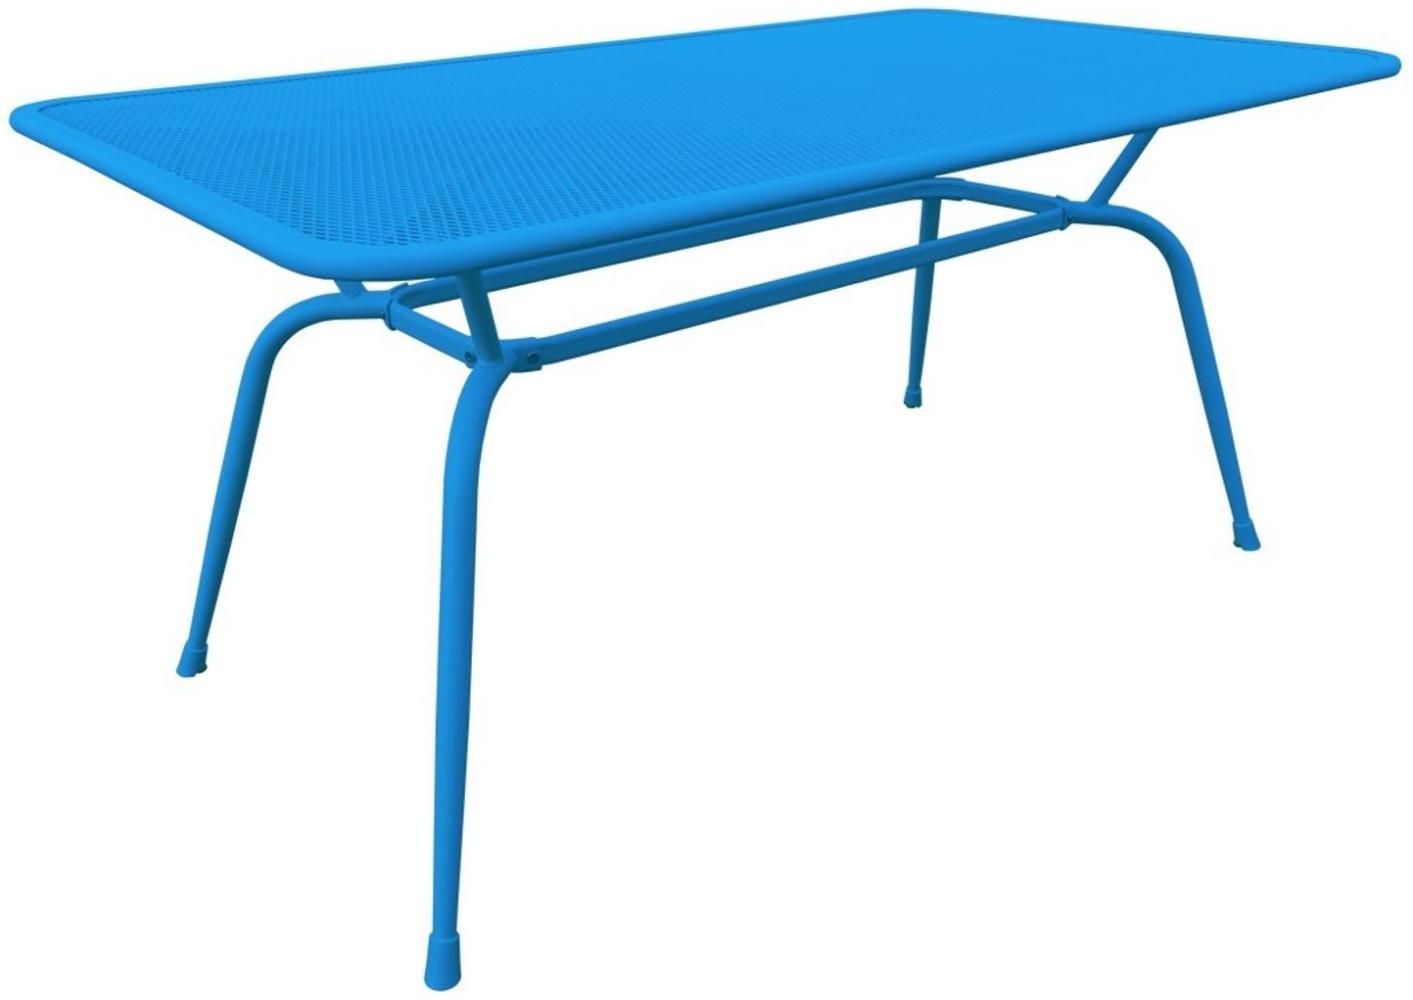 MWH-Tisch Conello 160x90x74cm blau Streckmetalltisch Gartentisch Tisch Möbel Bild 1